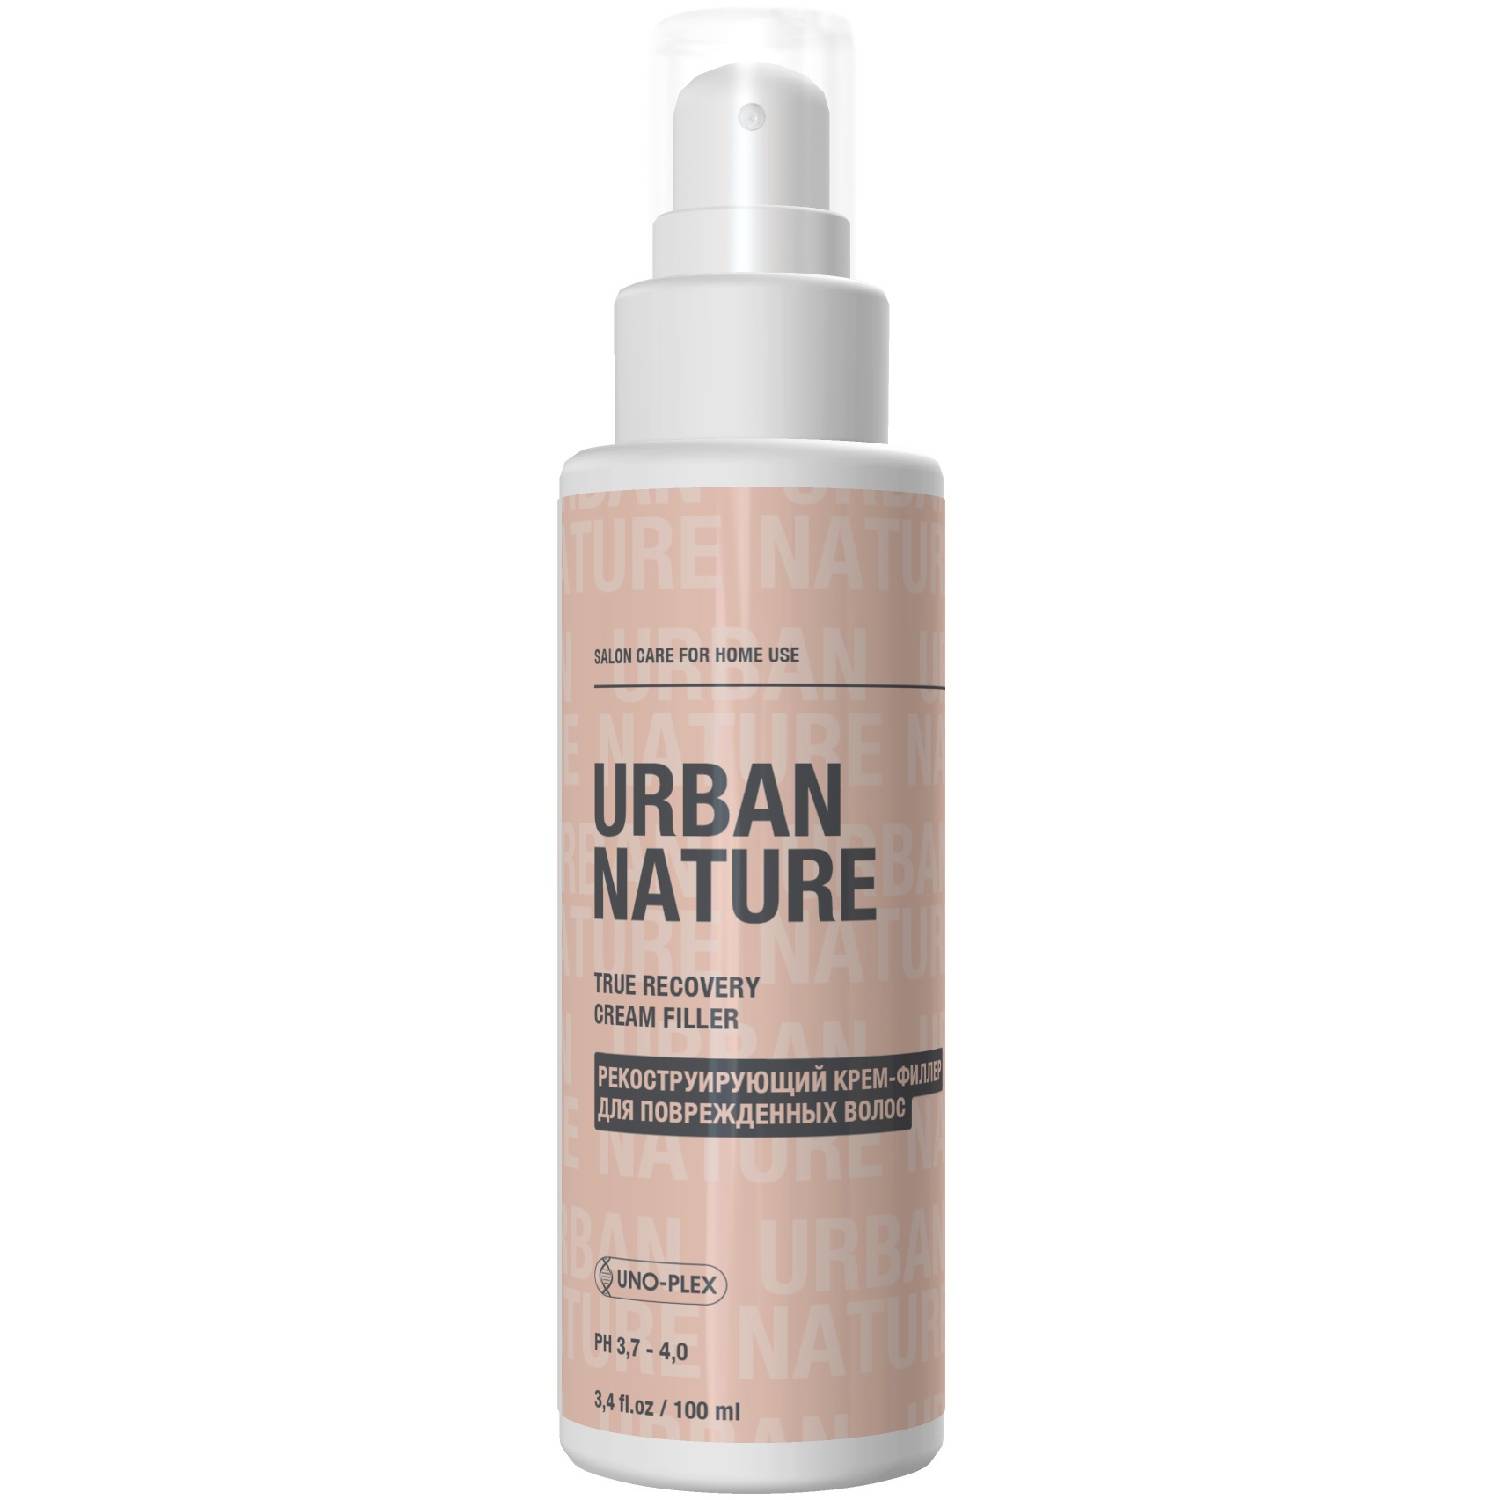 Urban Nature Реконструирующий крем-филлер для поврежденных волос, 100 мл (Urban Nature, True Recovery)